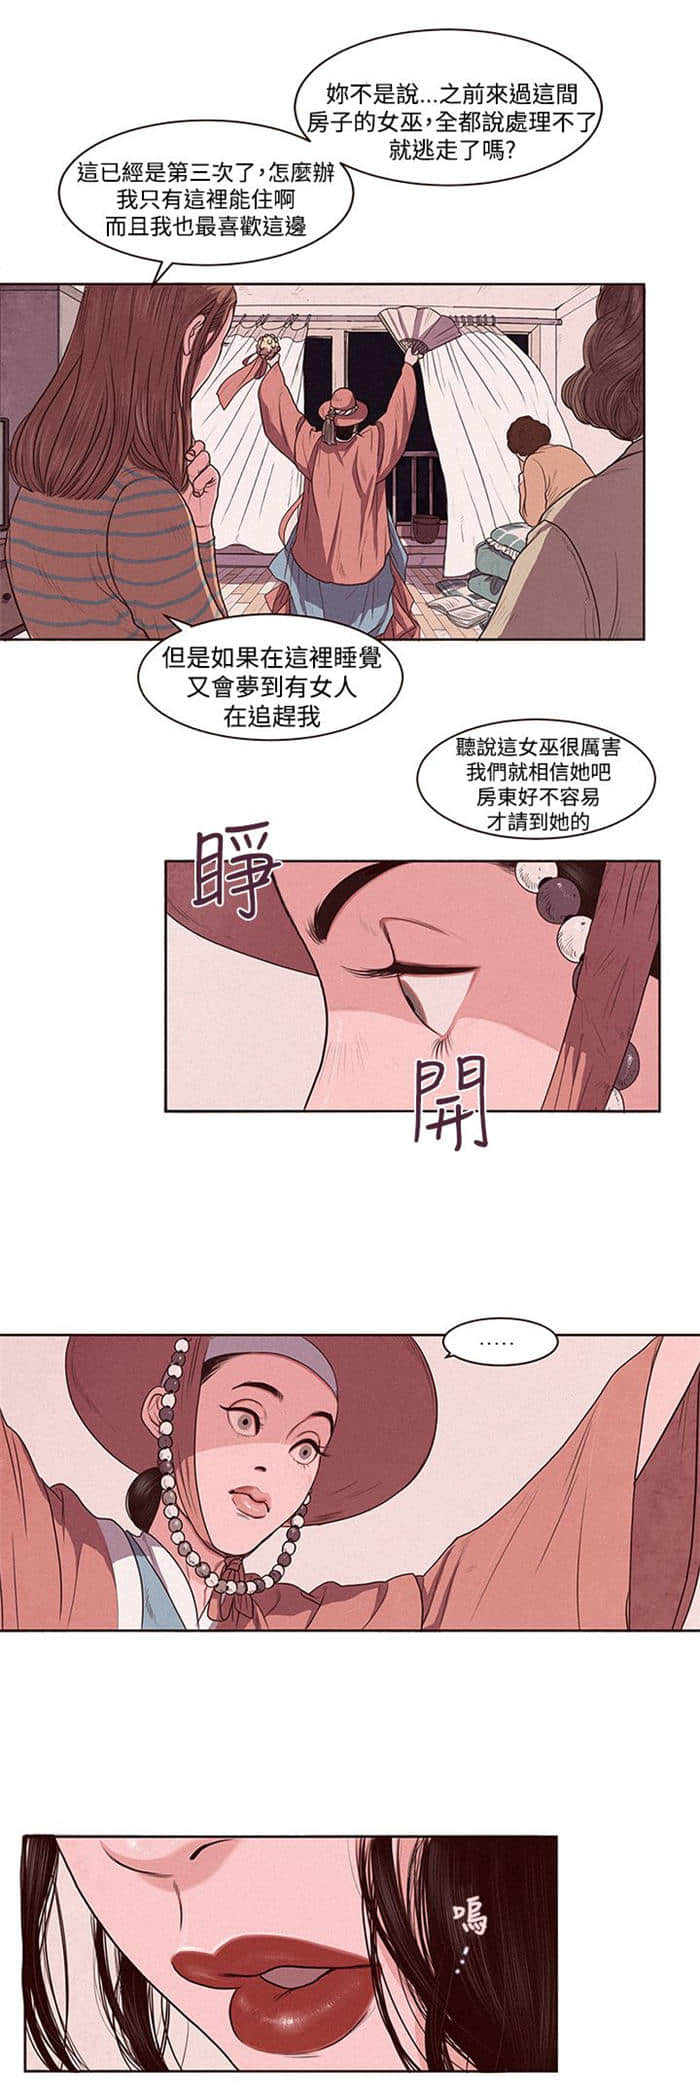 九龙珠完结版&【韩国漫画】 全文免费观看